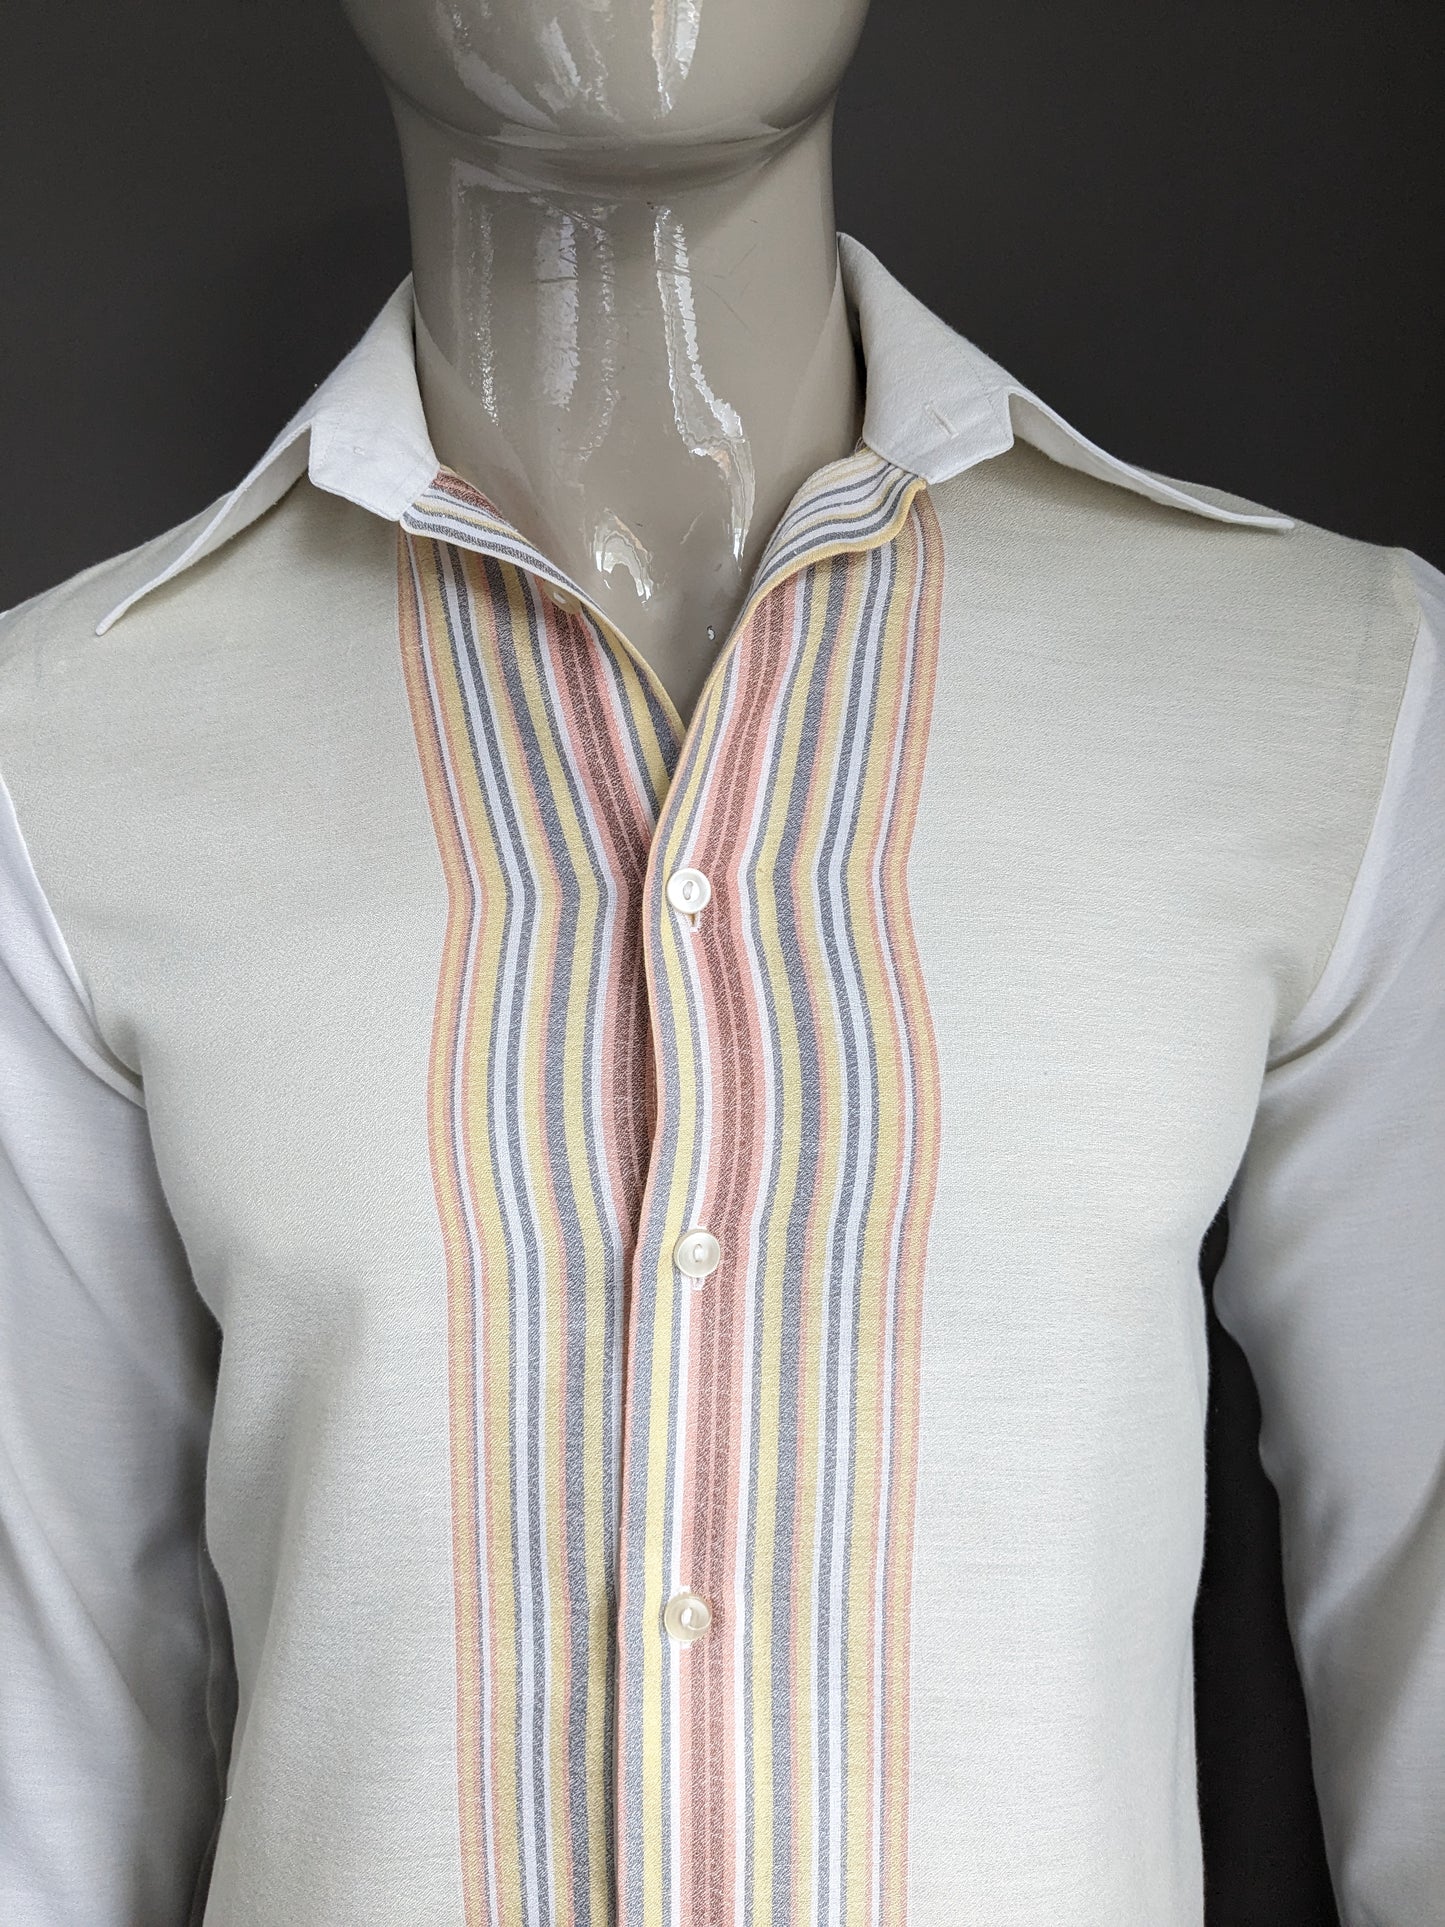 Chemise vintage des années 70 avec collier ponctuel. Colore rose gris jaune beige. Taille M.